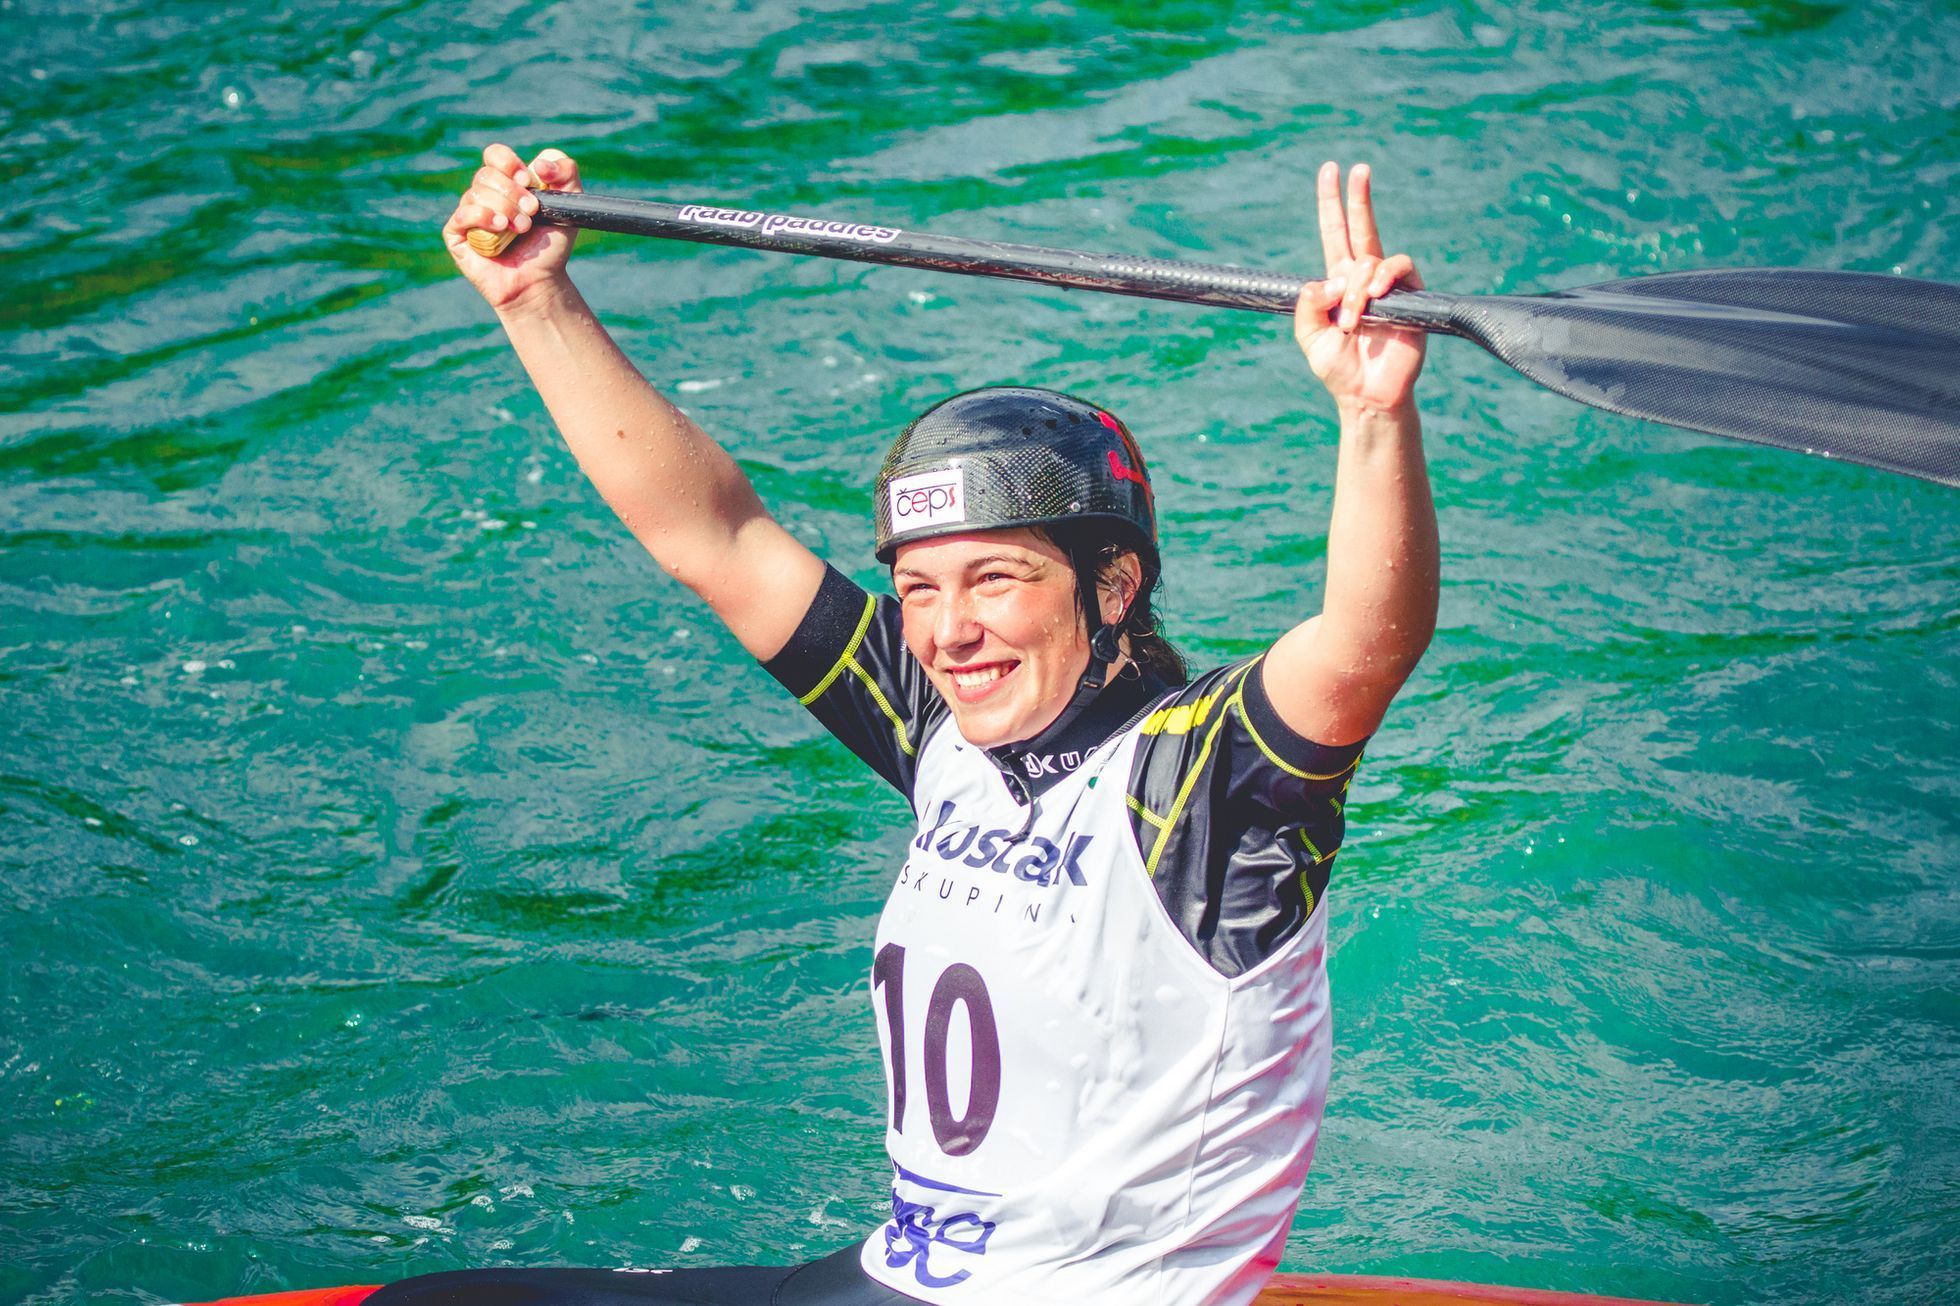 ME ve vodním slalomu 2017: Tereza Fišerová